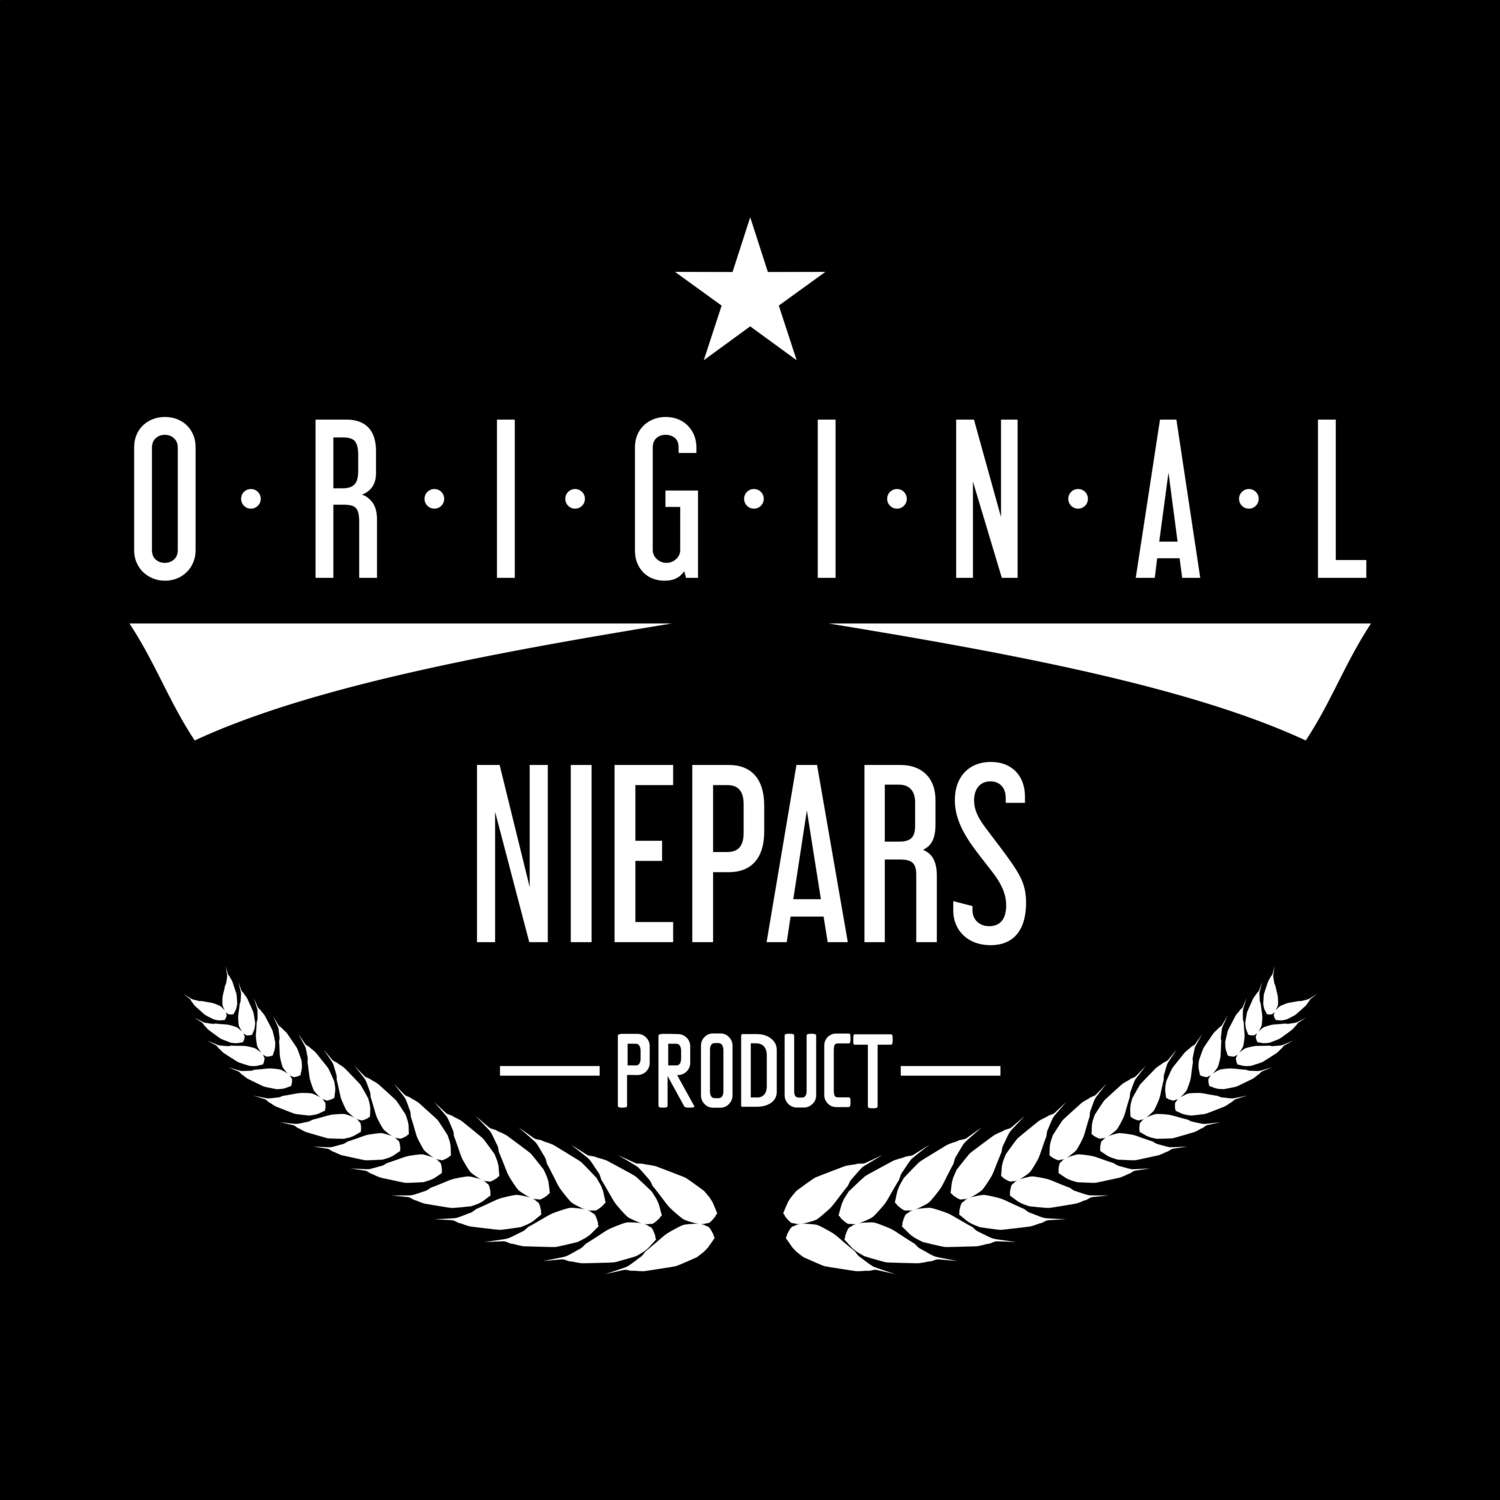 Niepars T-Shirt »Original Product«